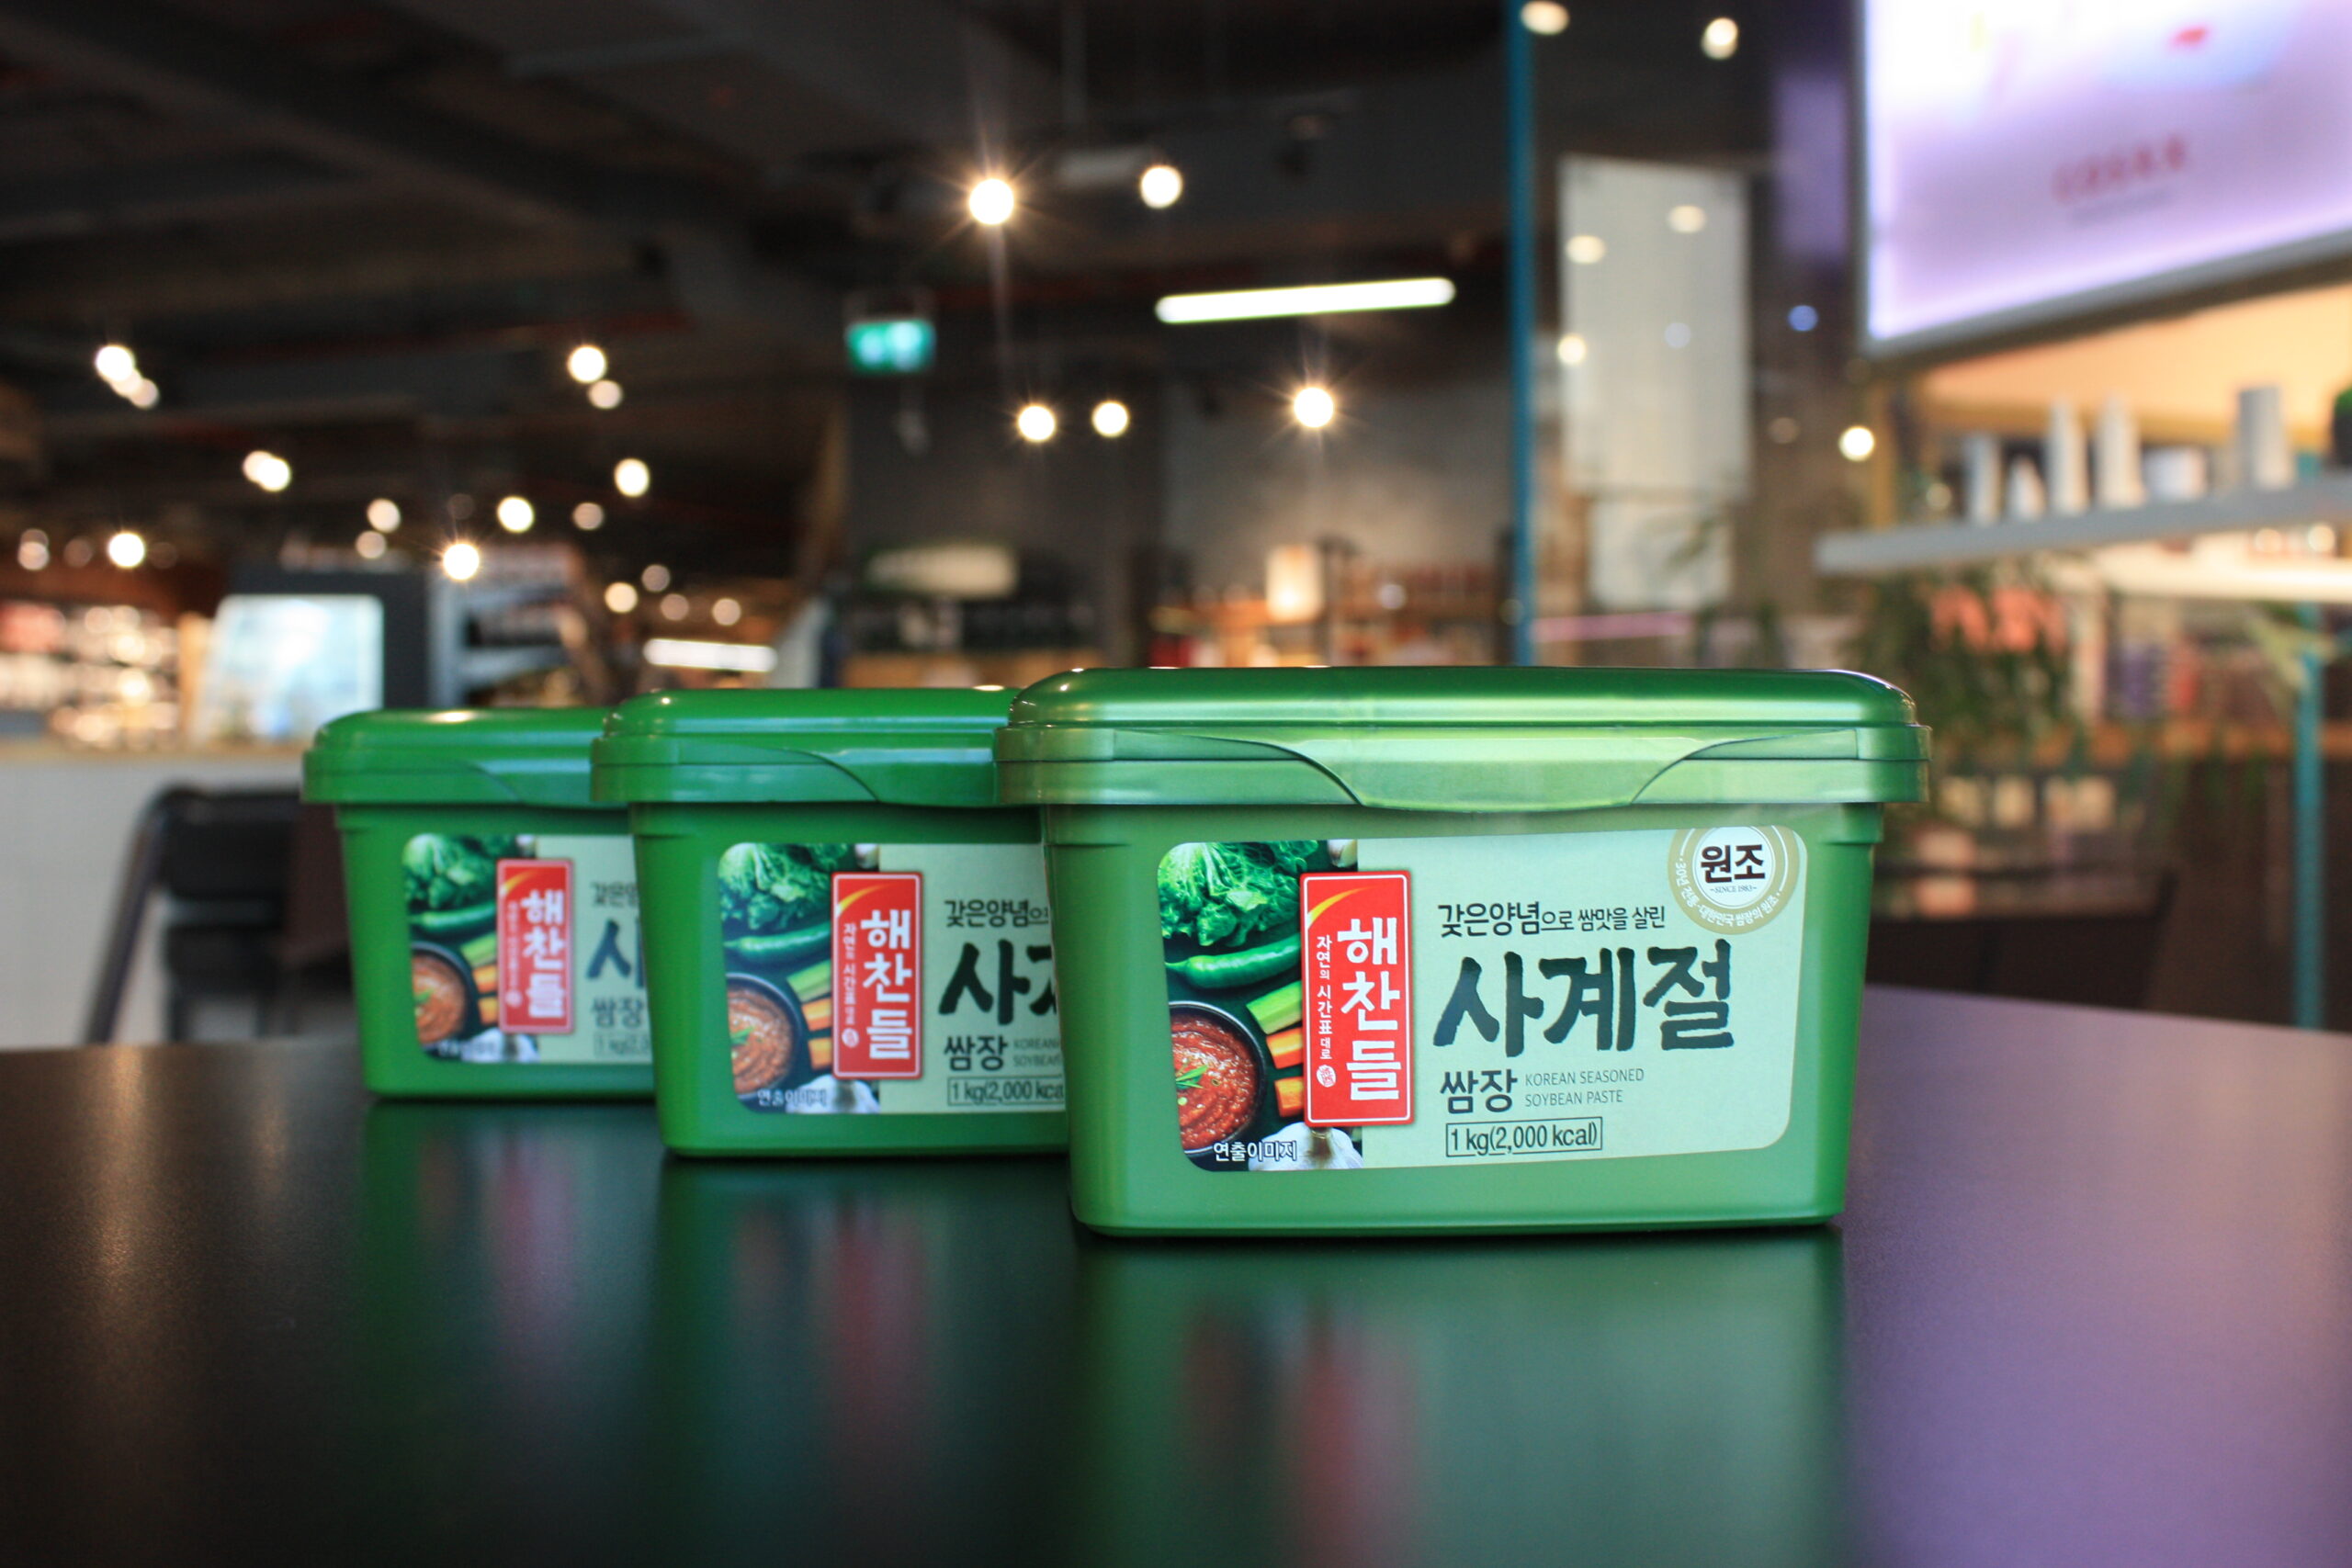 Packs of Ssamjang Korean bbq sauce